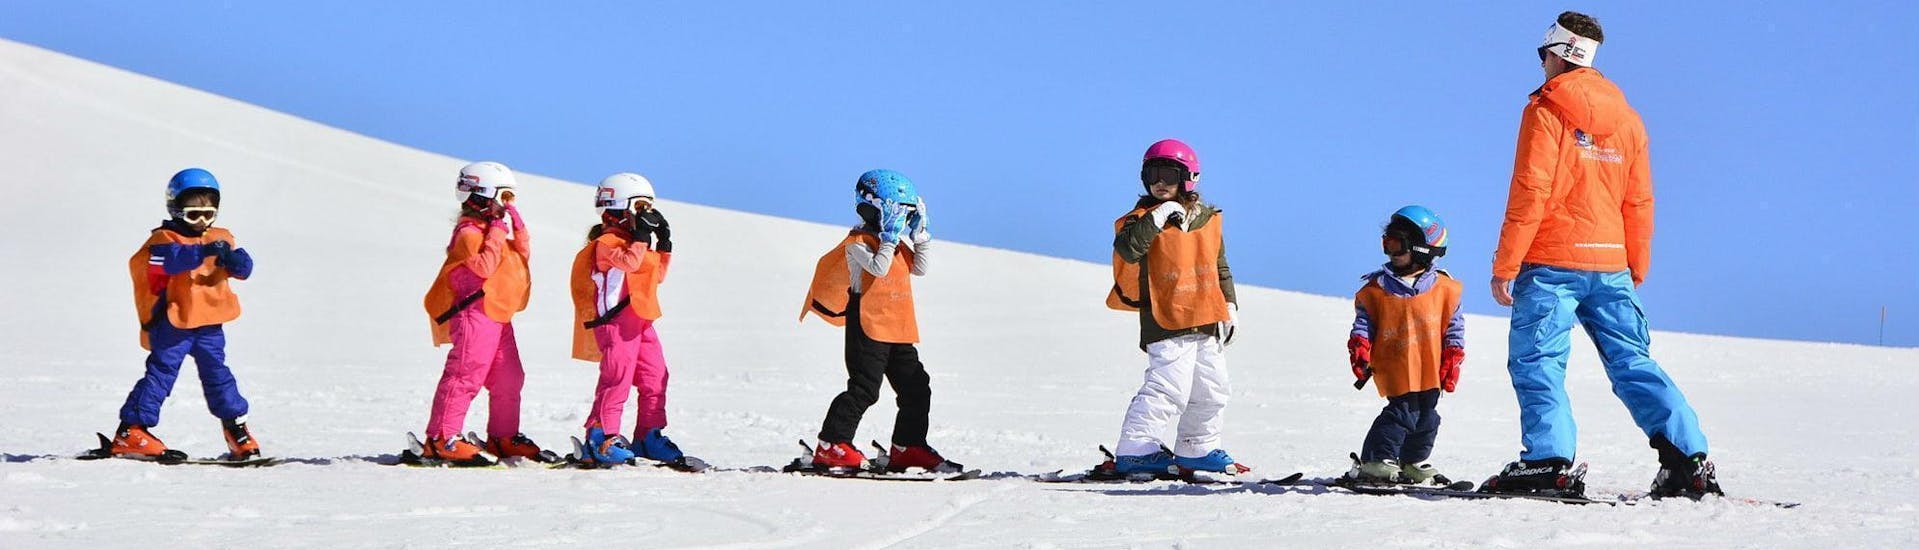 Cours de ski Enfants (6-14 ans) pour Débutants.